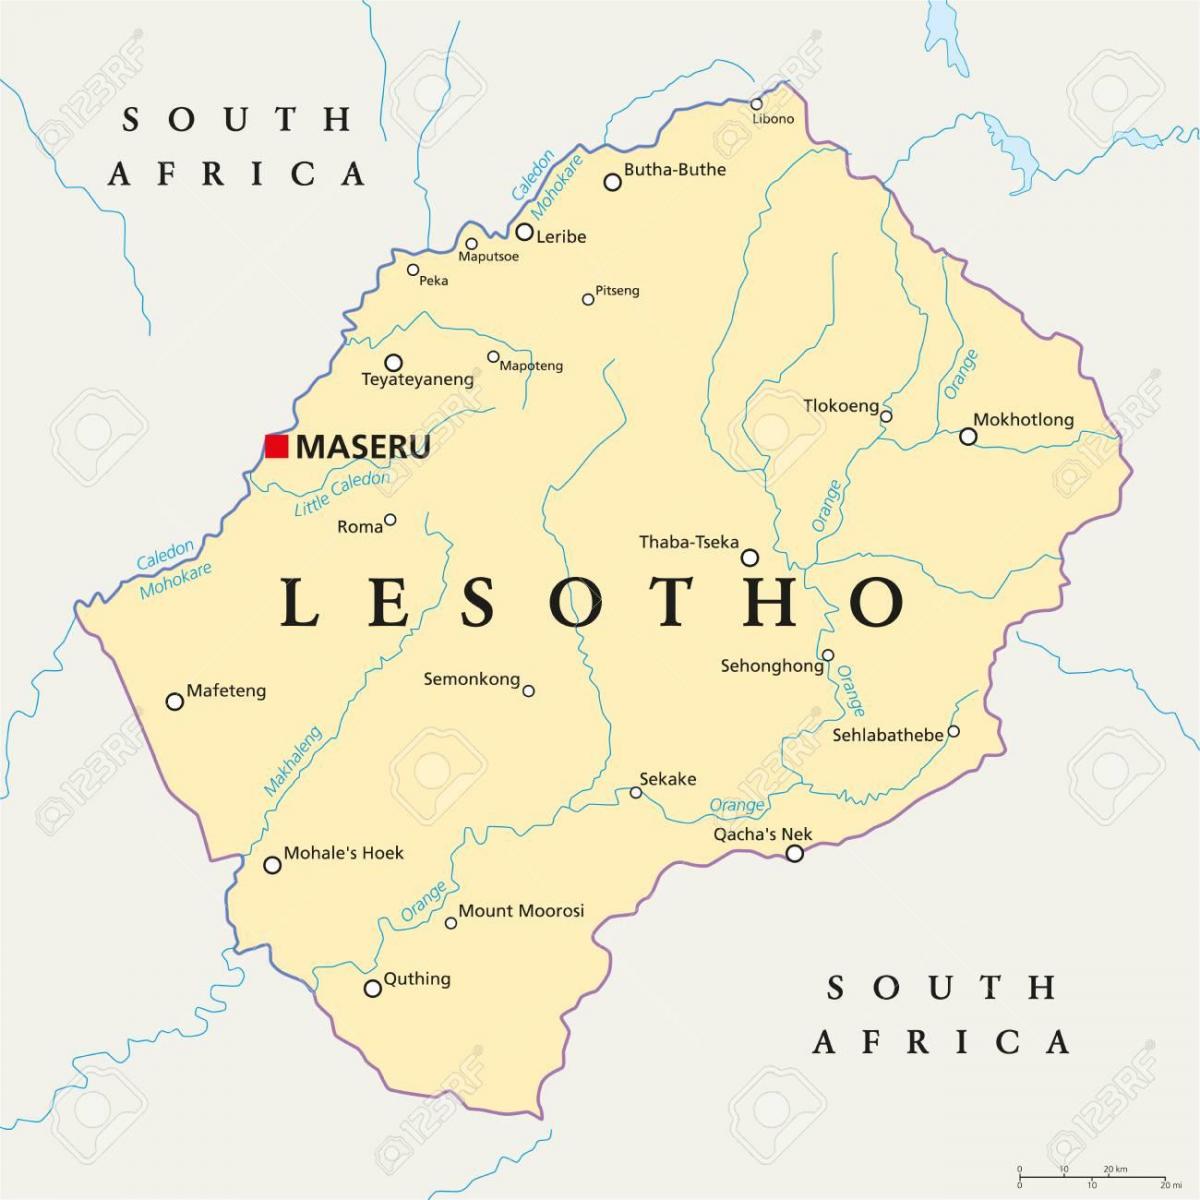 რუკა მასერუ ლესოტო